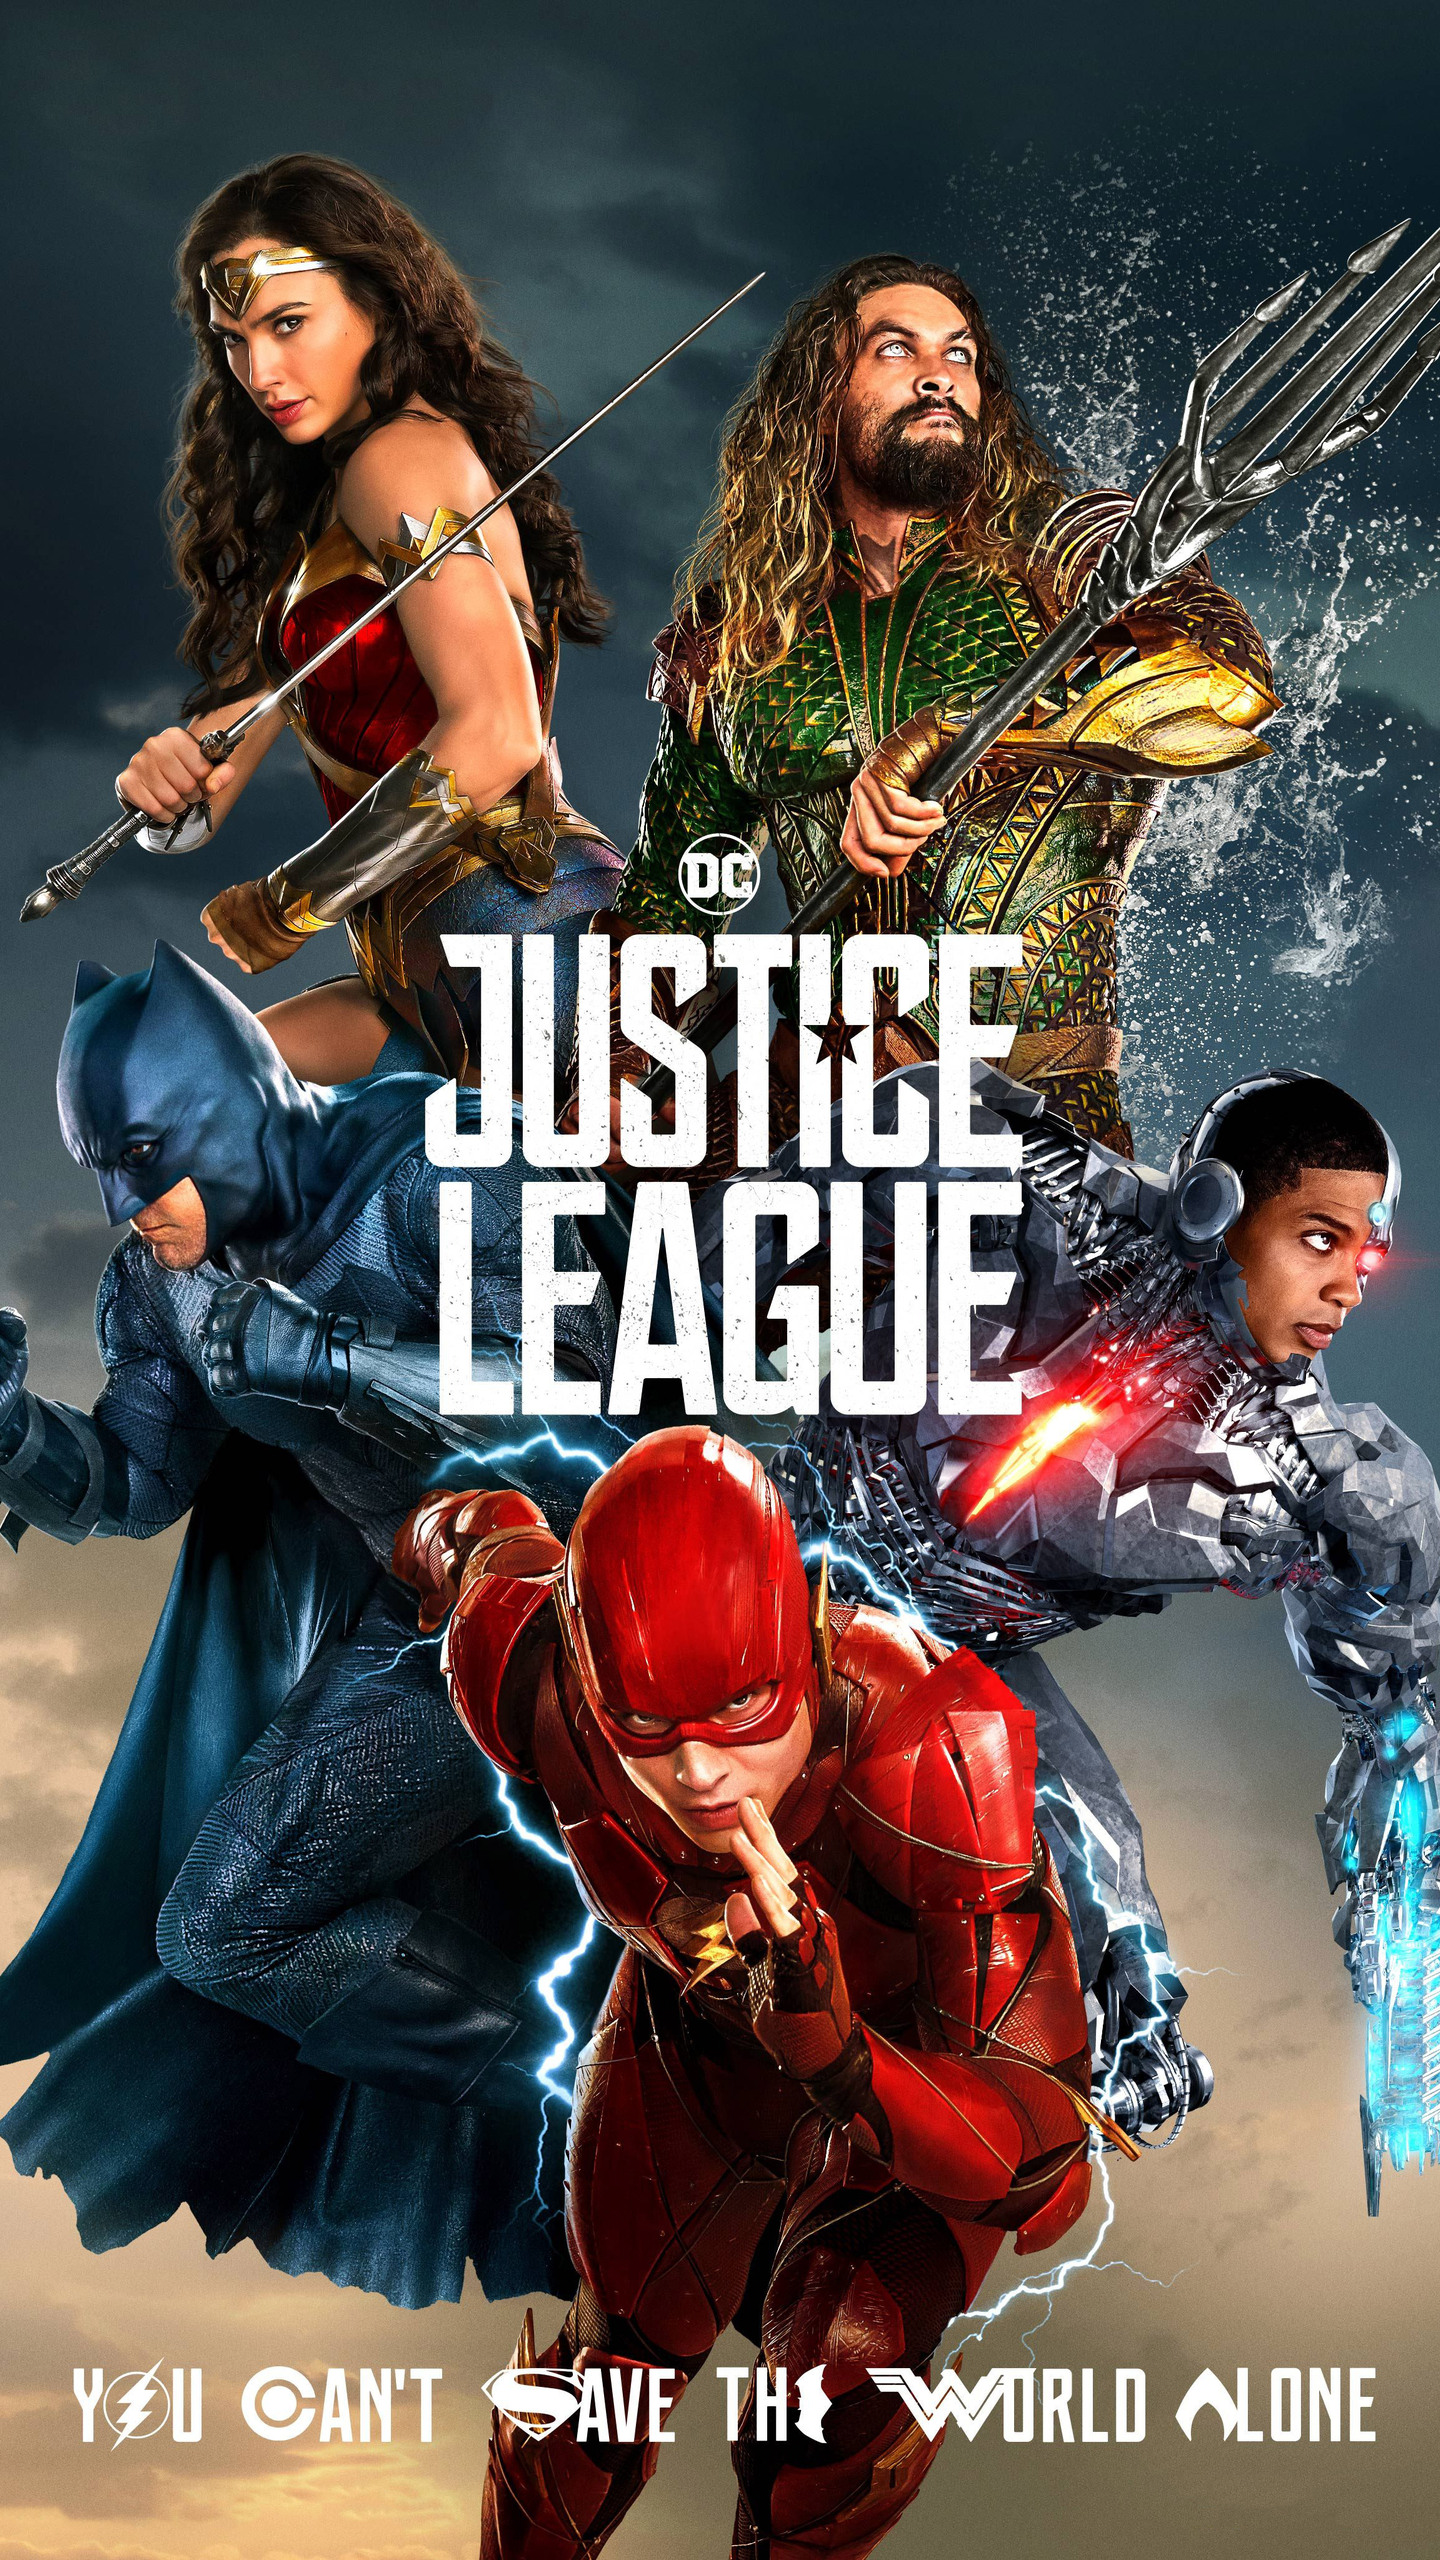 Aquaman Justice League 2017 Wallpapers